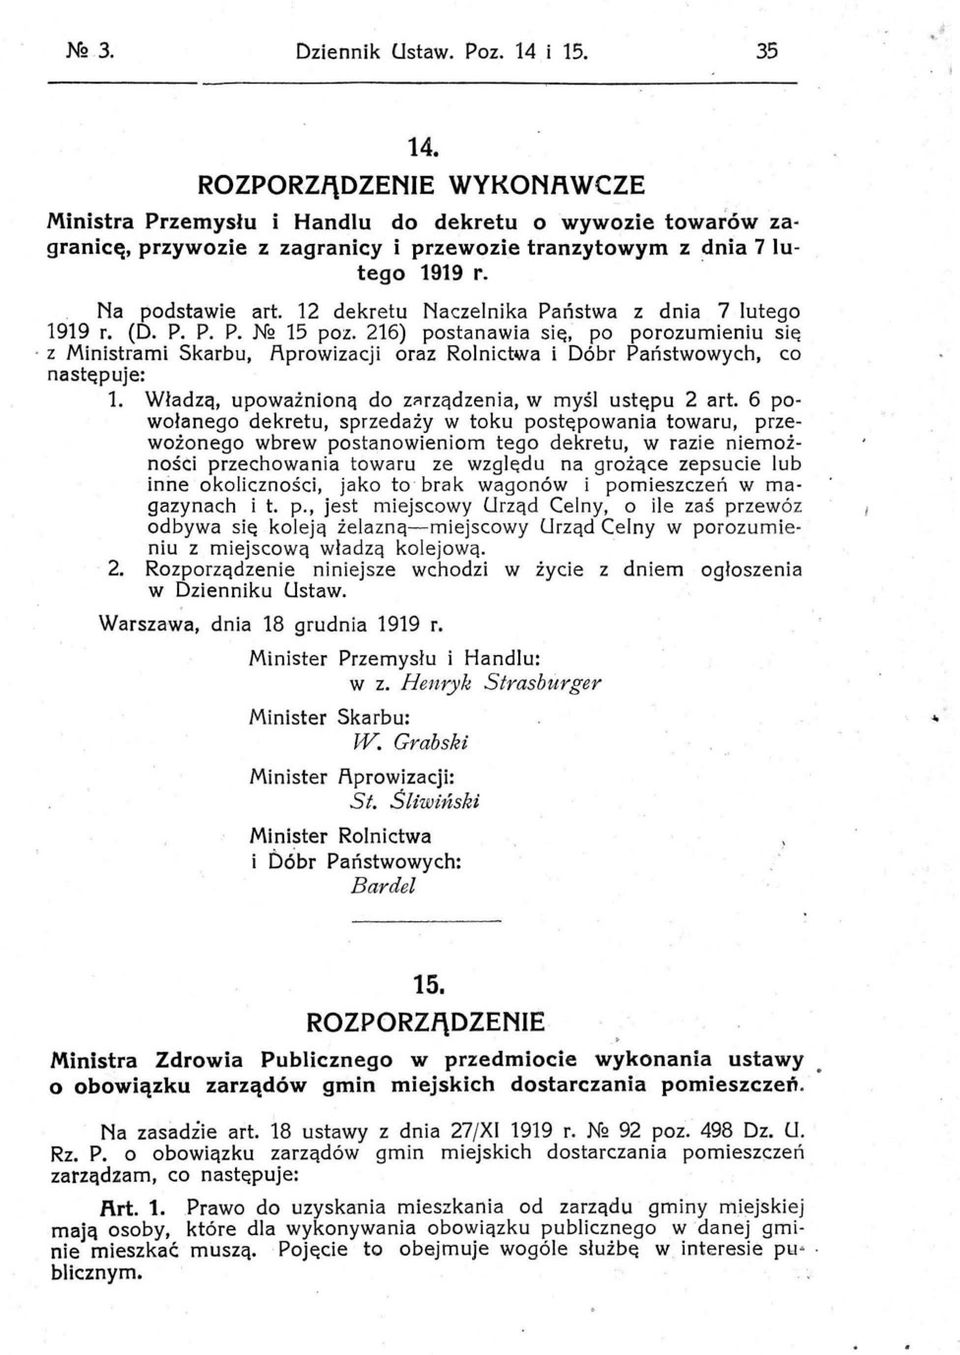 12 dekretu Naczelnika Państwa z dnia 7 lutego 1919 r. (D. P. P. P. N2 15 poz. 216) postanawia się, po porozumieniu się.